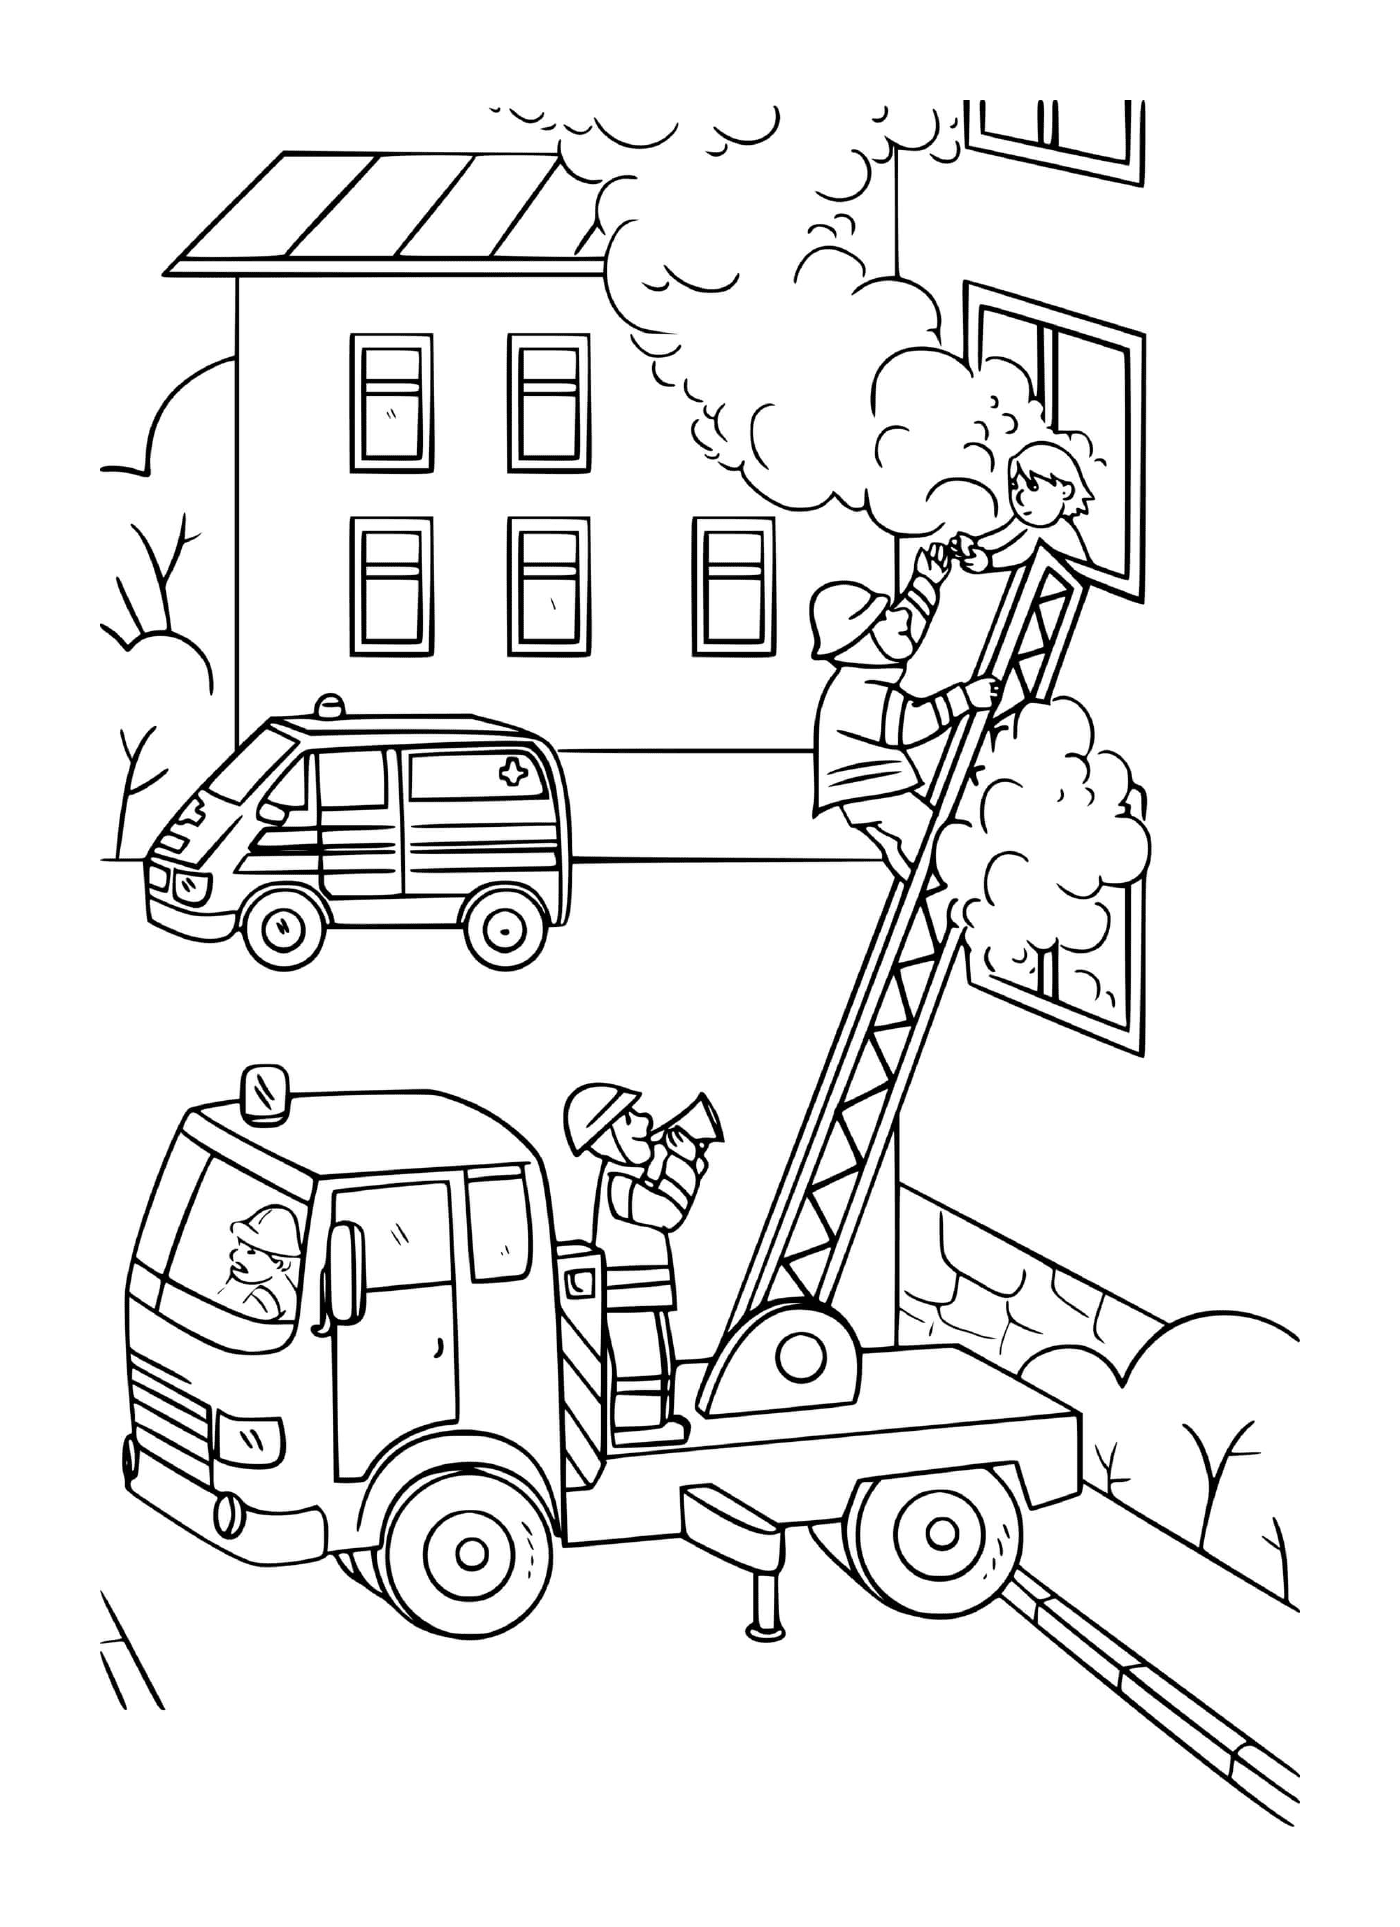 coloriage un pompier grimpe sur une echelle du camion pour sauver une fille prit dans une maison en feu